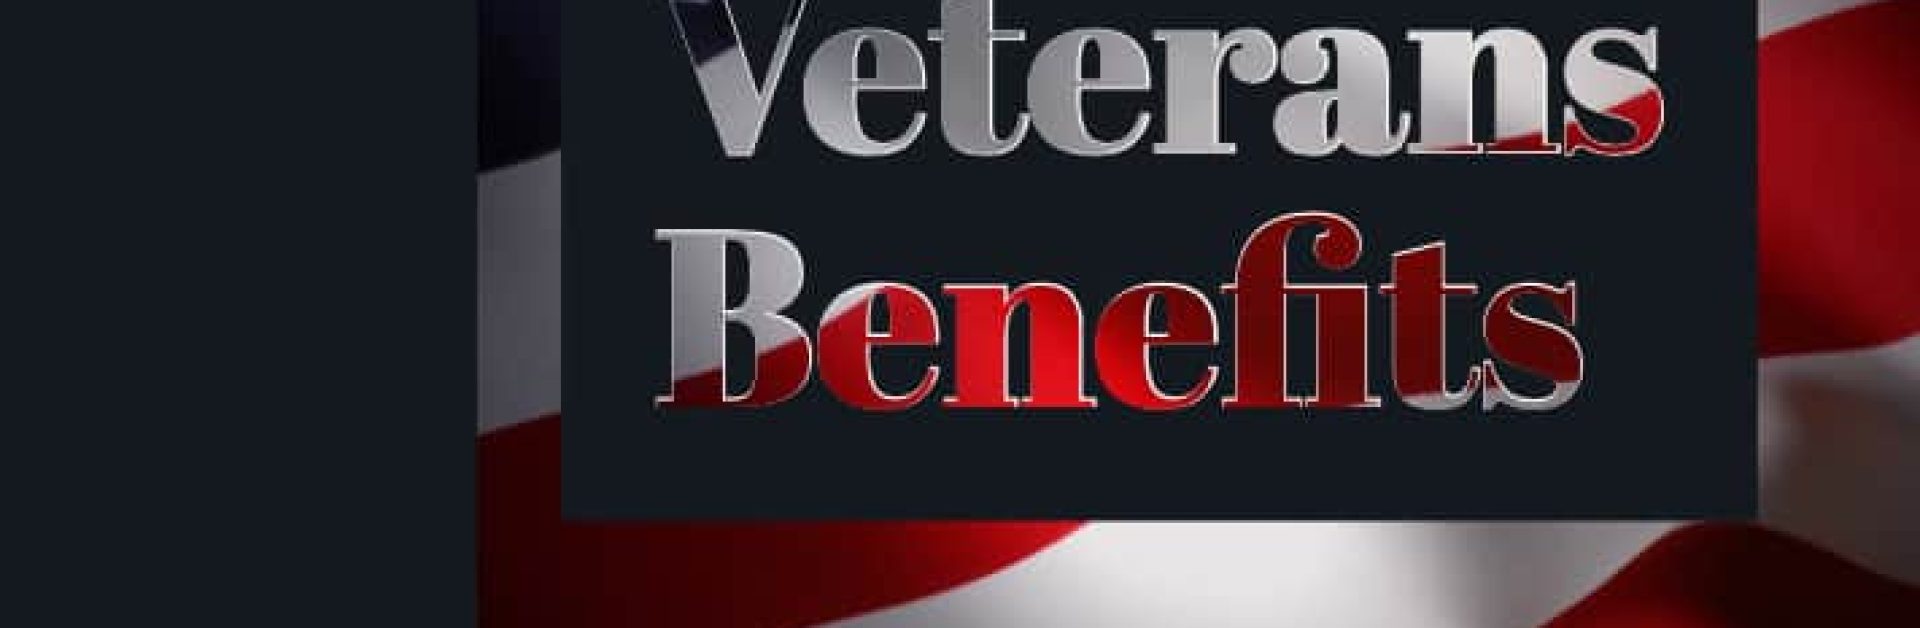 2019-veterans-benefits